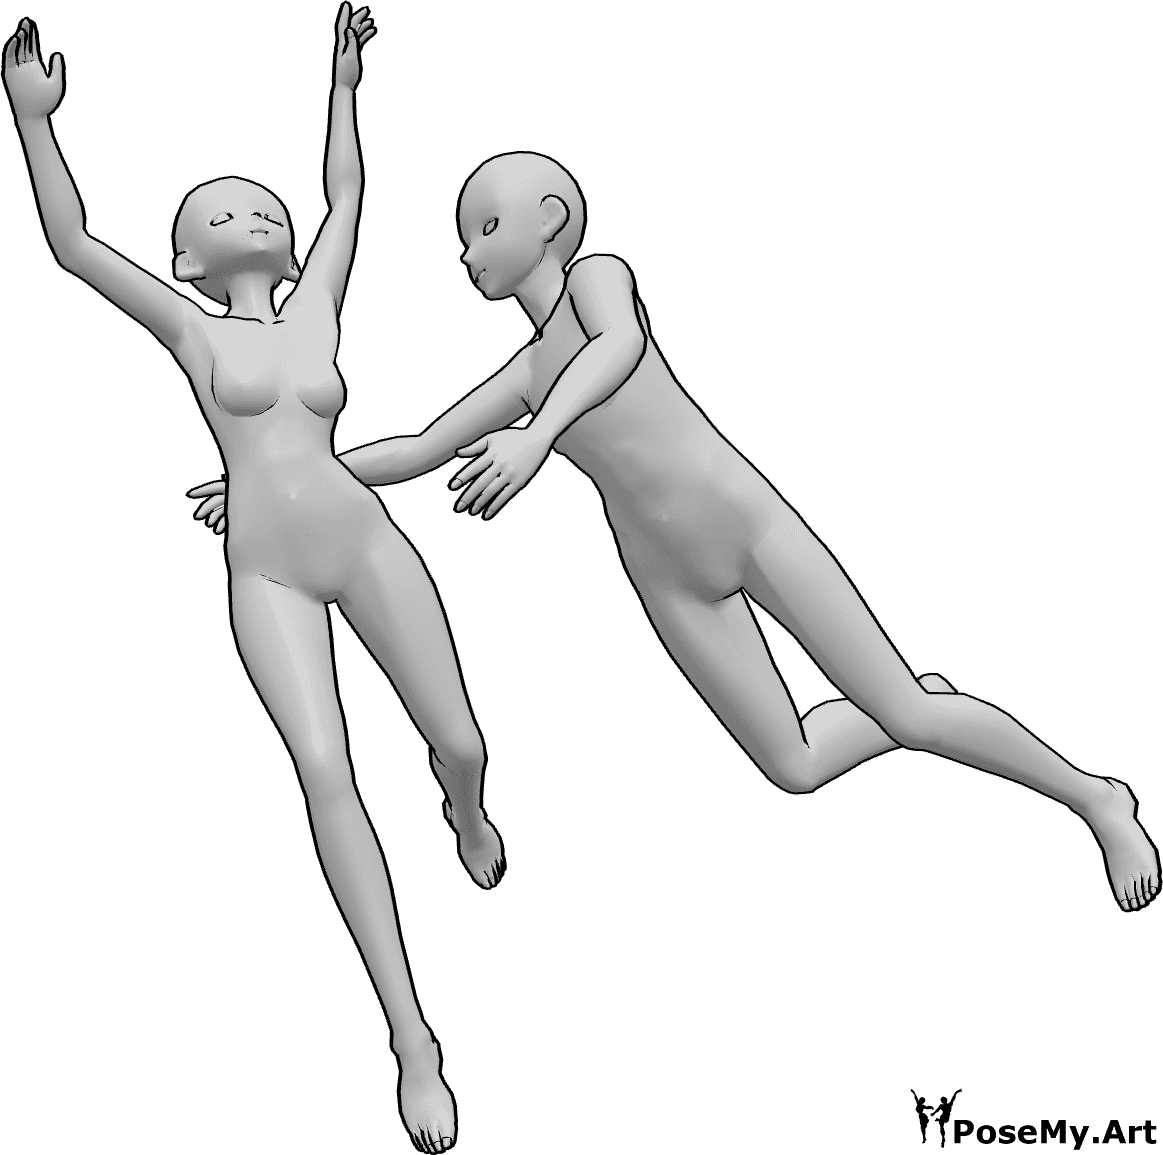 Riferimento alle pose- Posa femminile maschile in caduta - La femmina e l'uomo stanno cadendo insieme, l'uomo cerca di raggiungere la femmina.